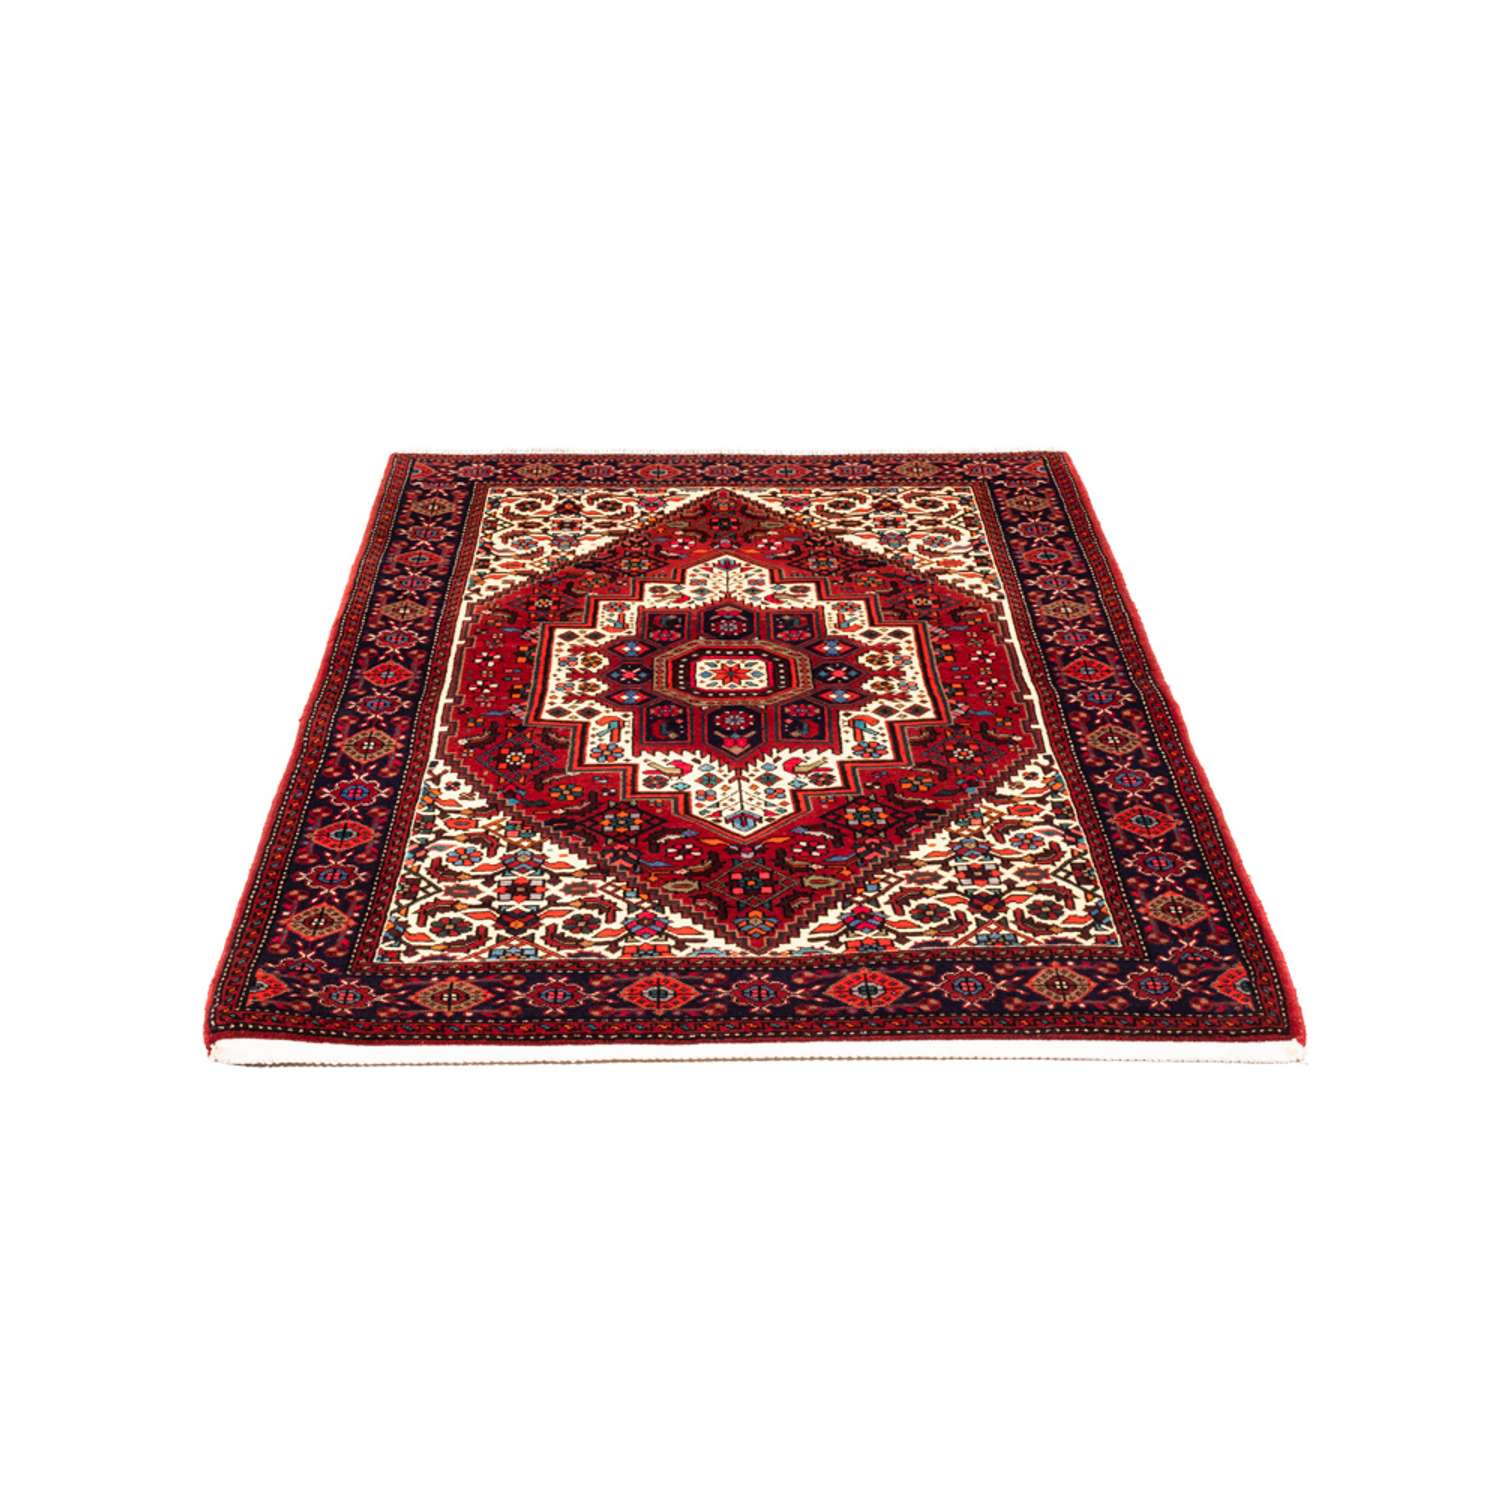 Perski dywan - Nomadyczny - 148 x 100 cm - czerwony